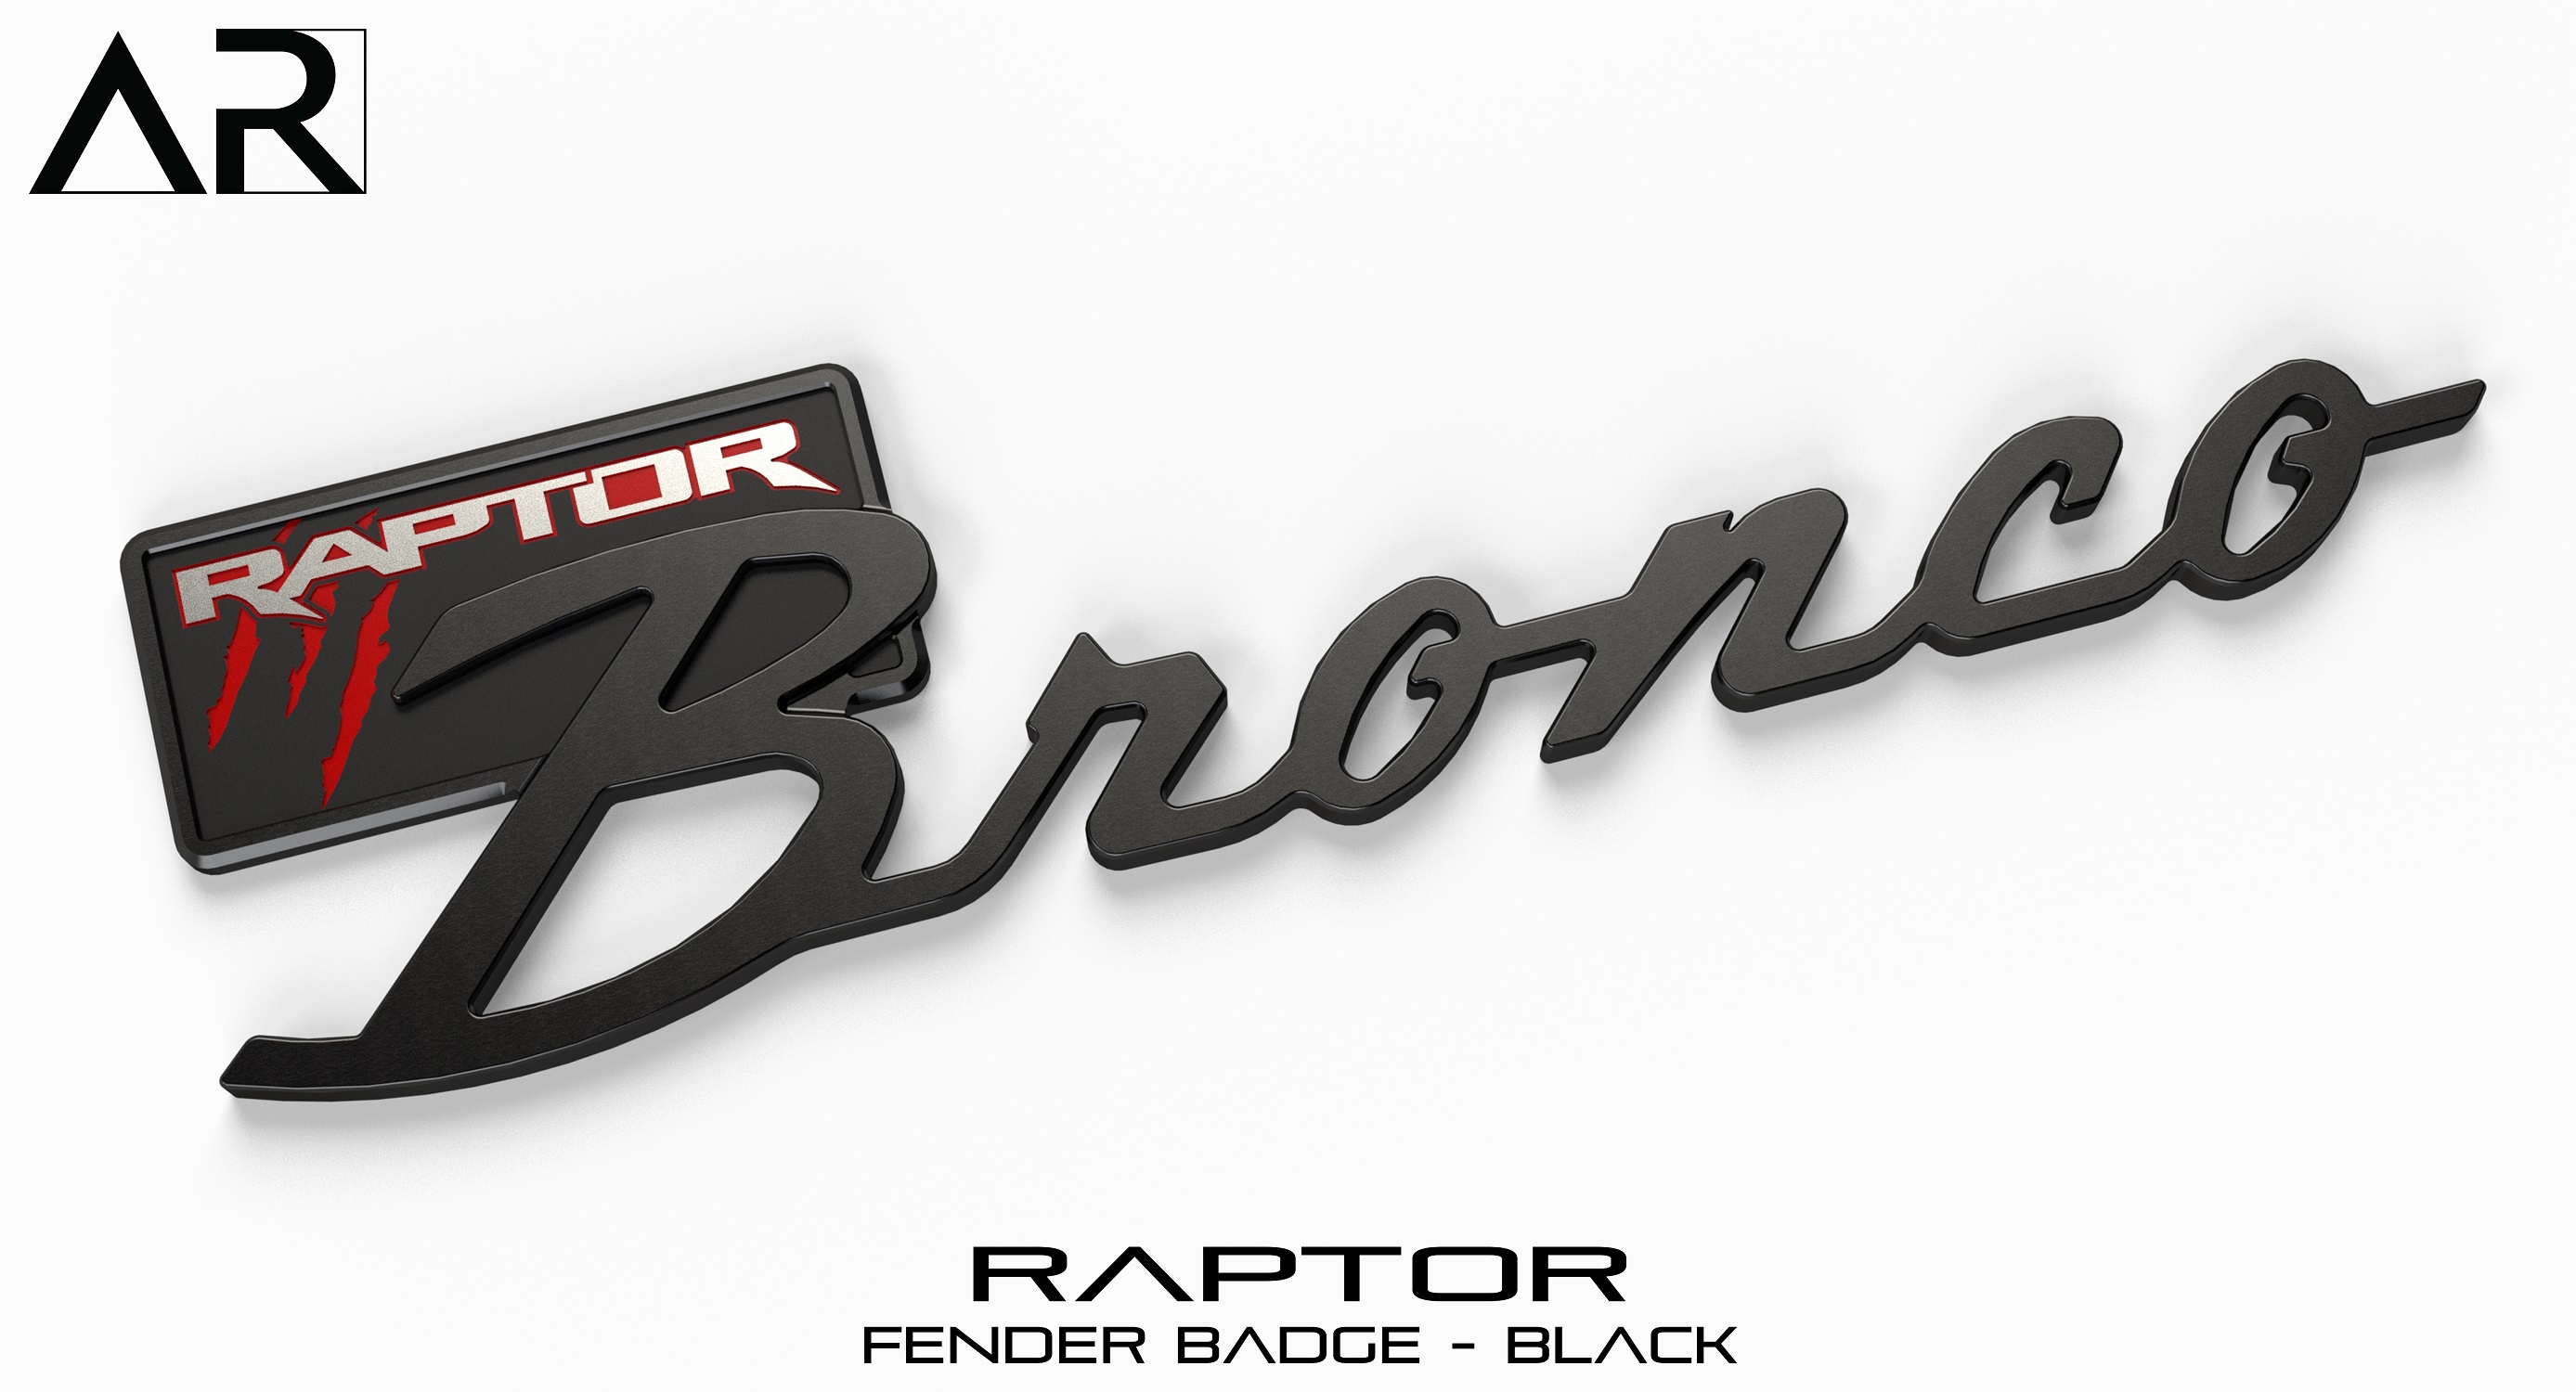 Ford Bronco AR | BRONCO CLASSIC DNA Fender Badge 16010010 - Fender Badge - Raptor - Black